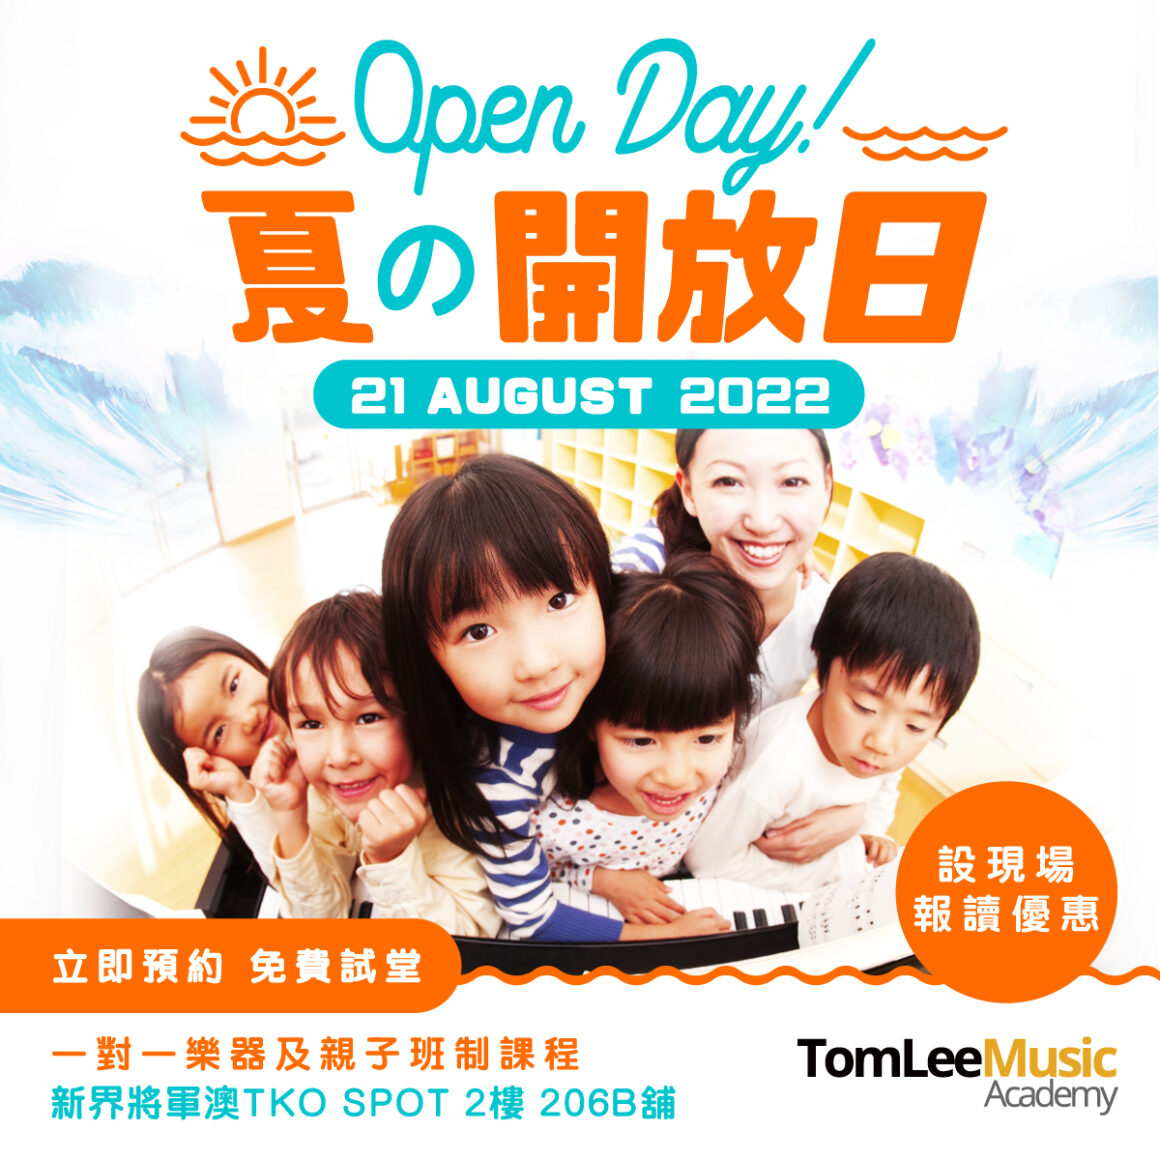 Tseung Kwan O Music Academy Open Day